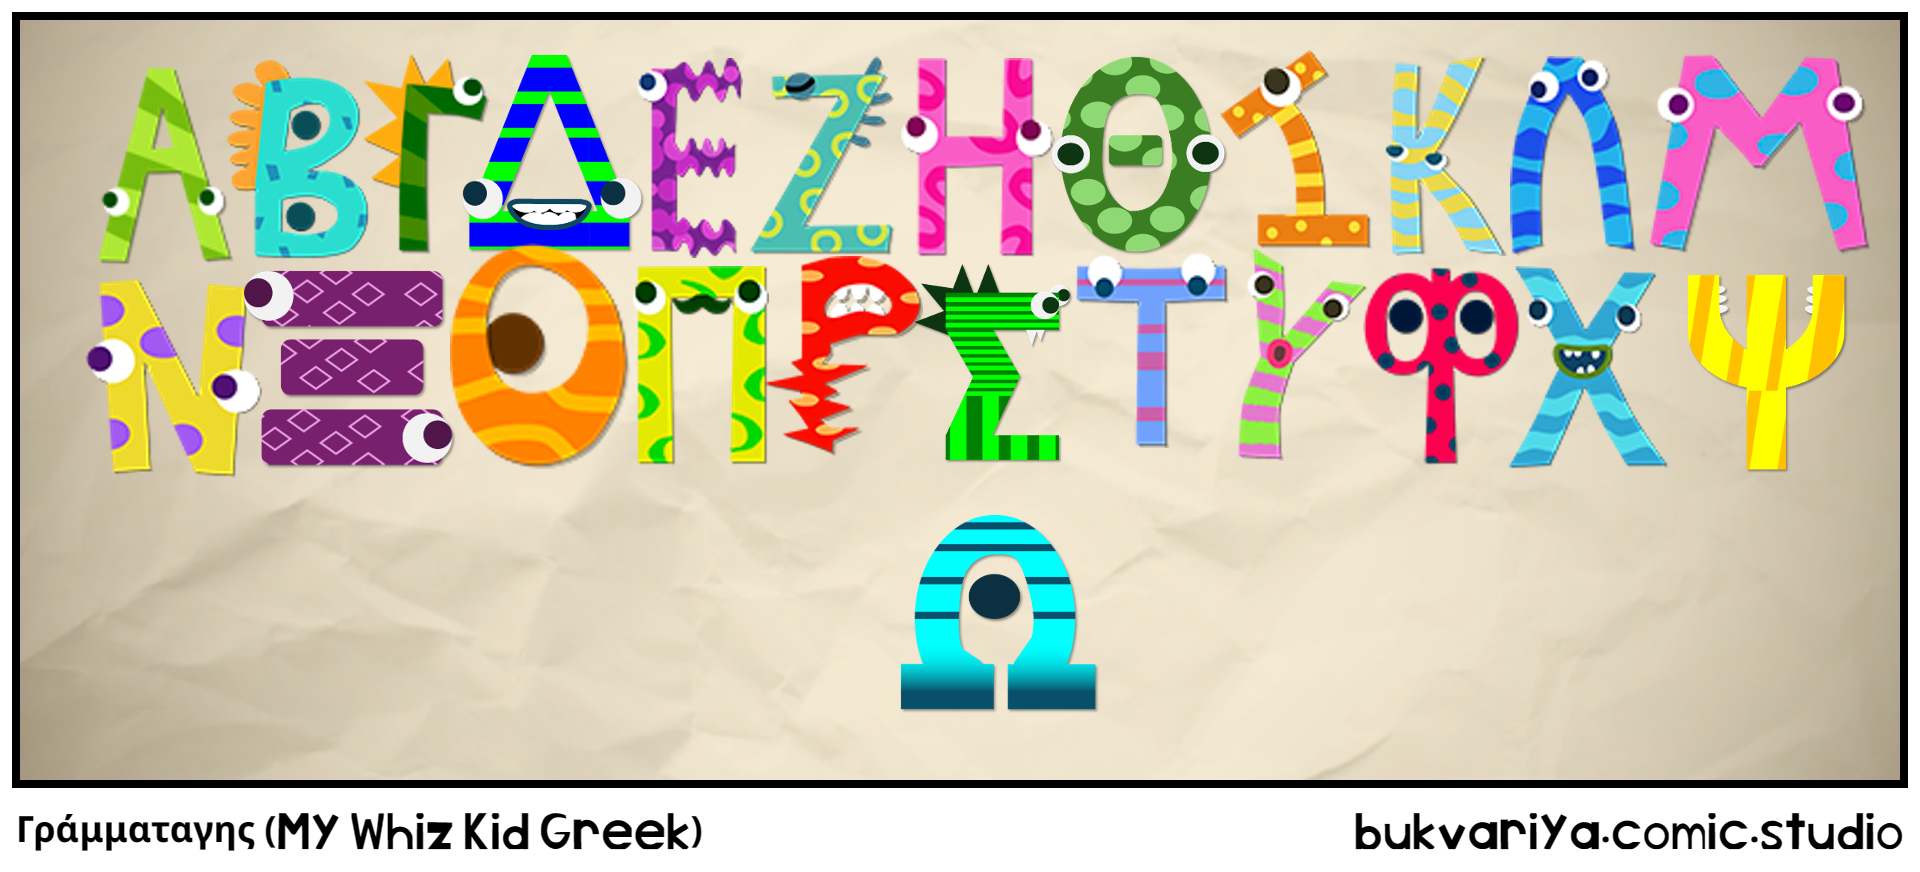 Γράμματαγης (My Whiz Kid Greek)